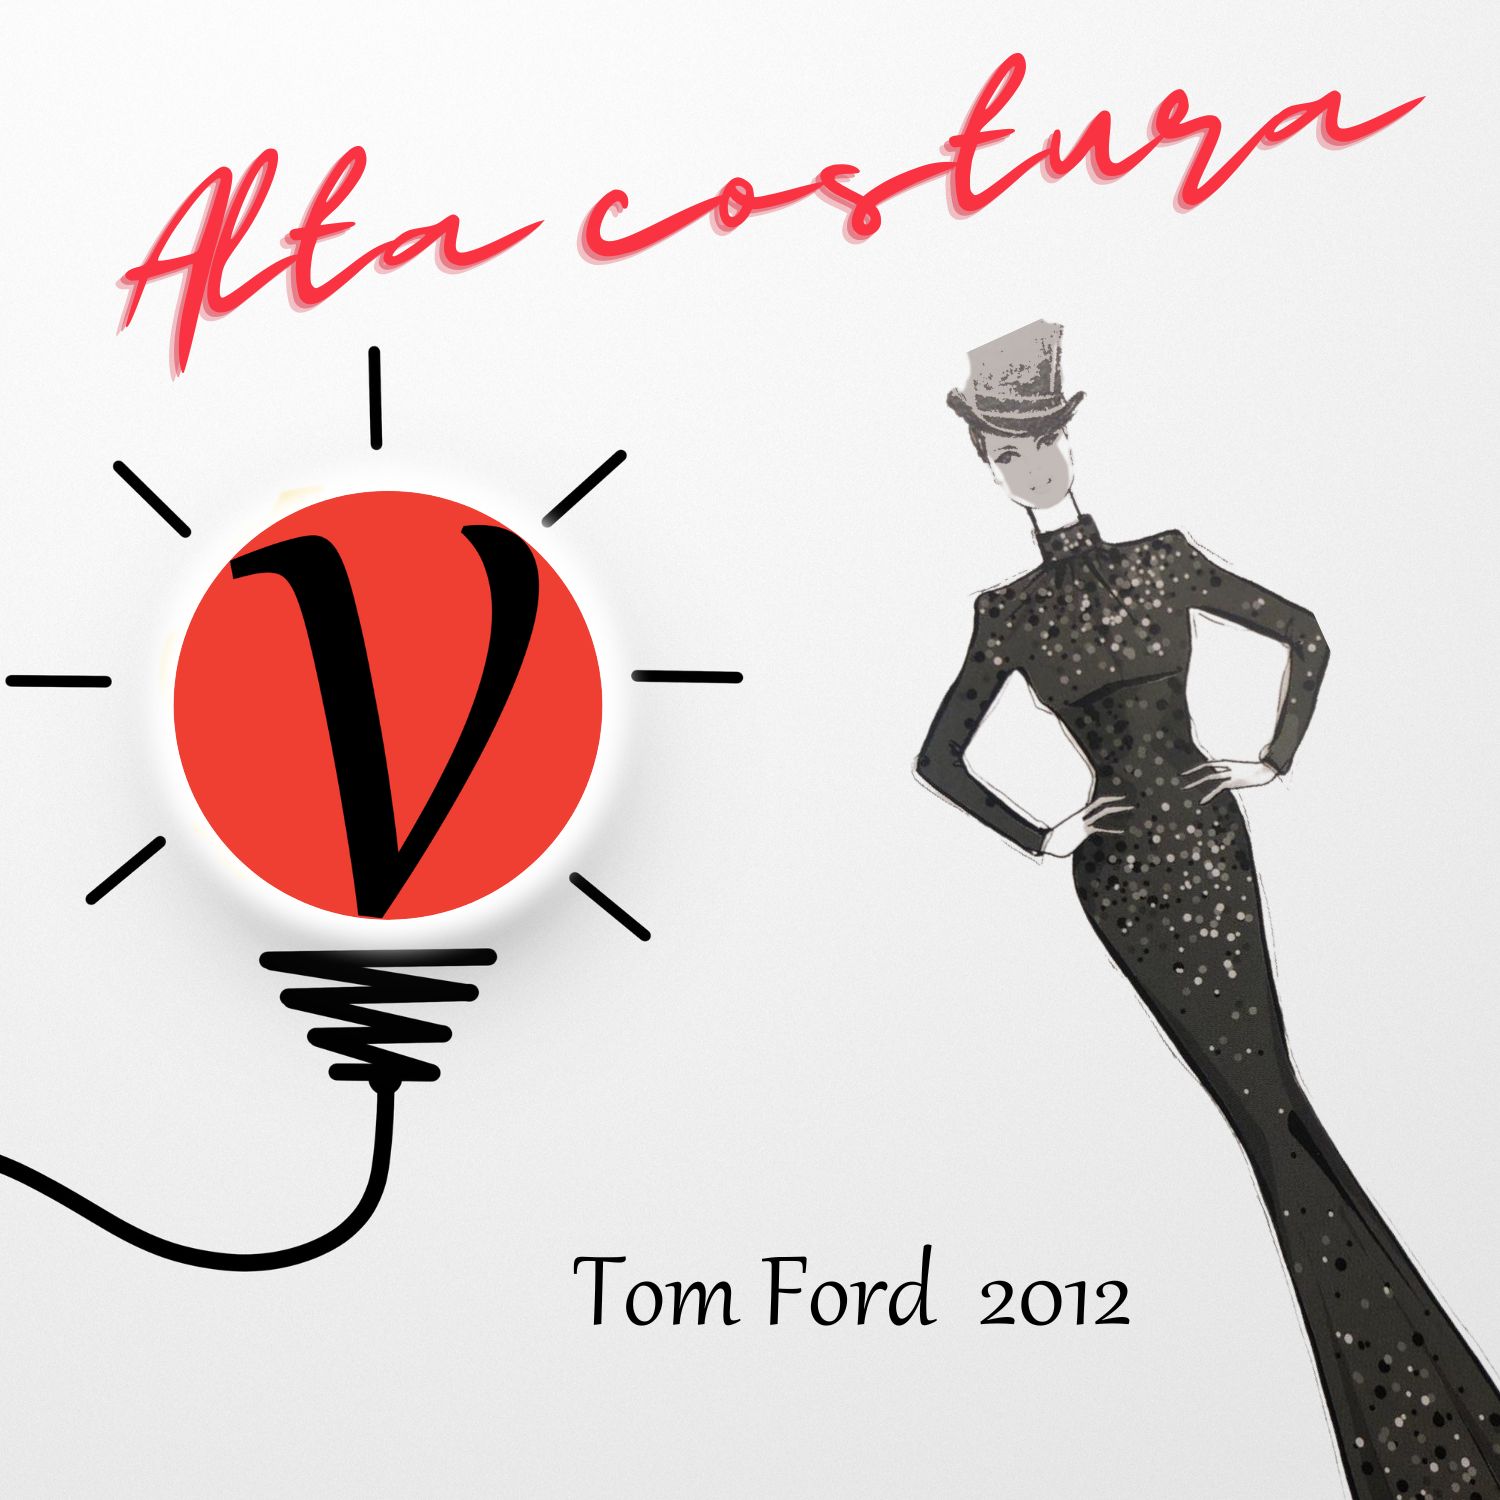 Tom Ford 2012